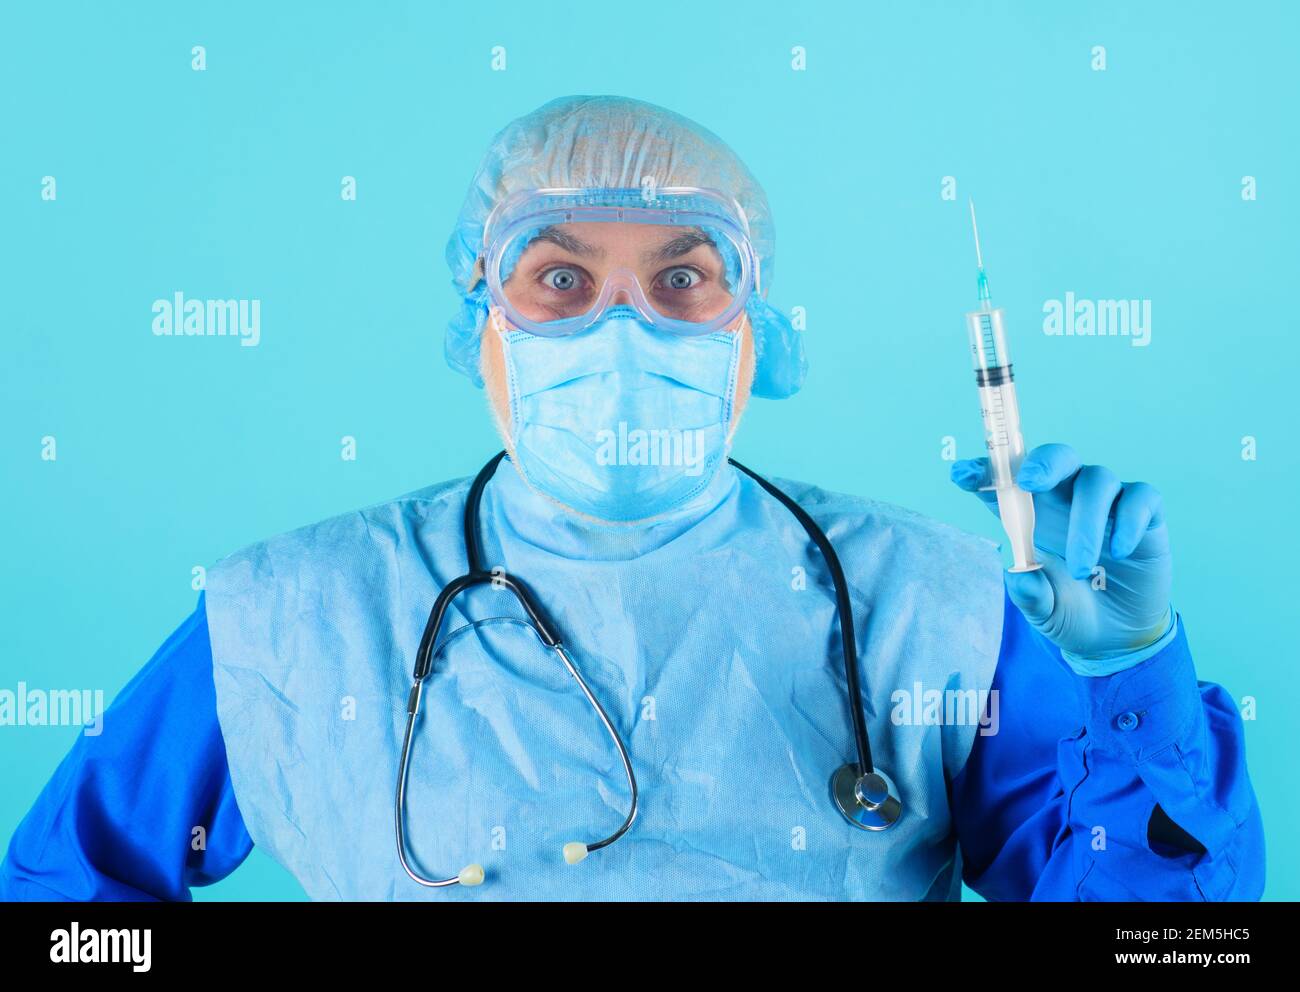 Medico in tuta protettiva, occhiali e maschera medica con siringa. Infermiere di sesso maschile che prepara l'iniezione con il vaccino. Foto Stock